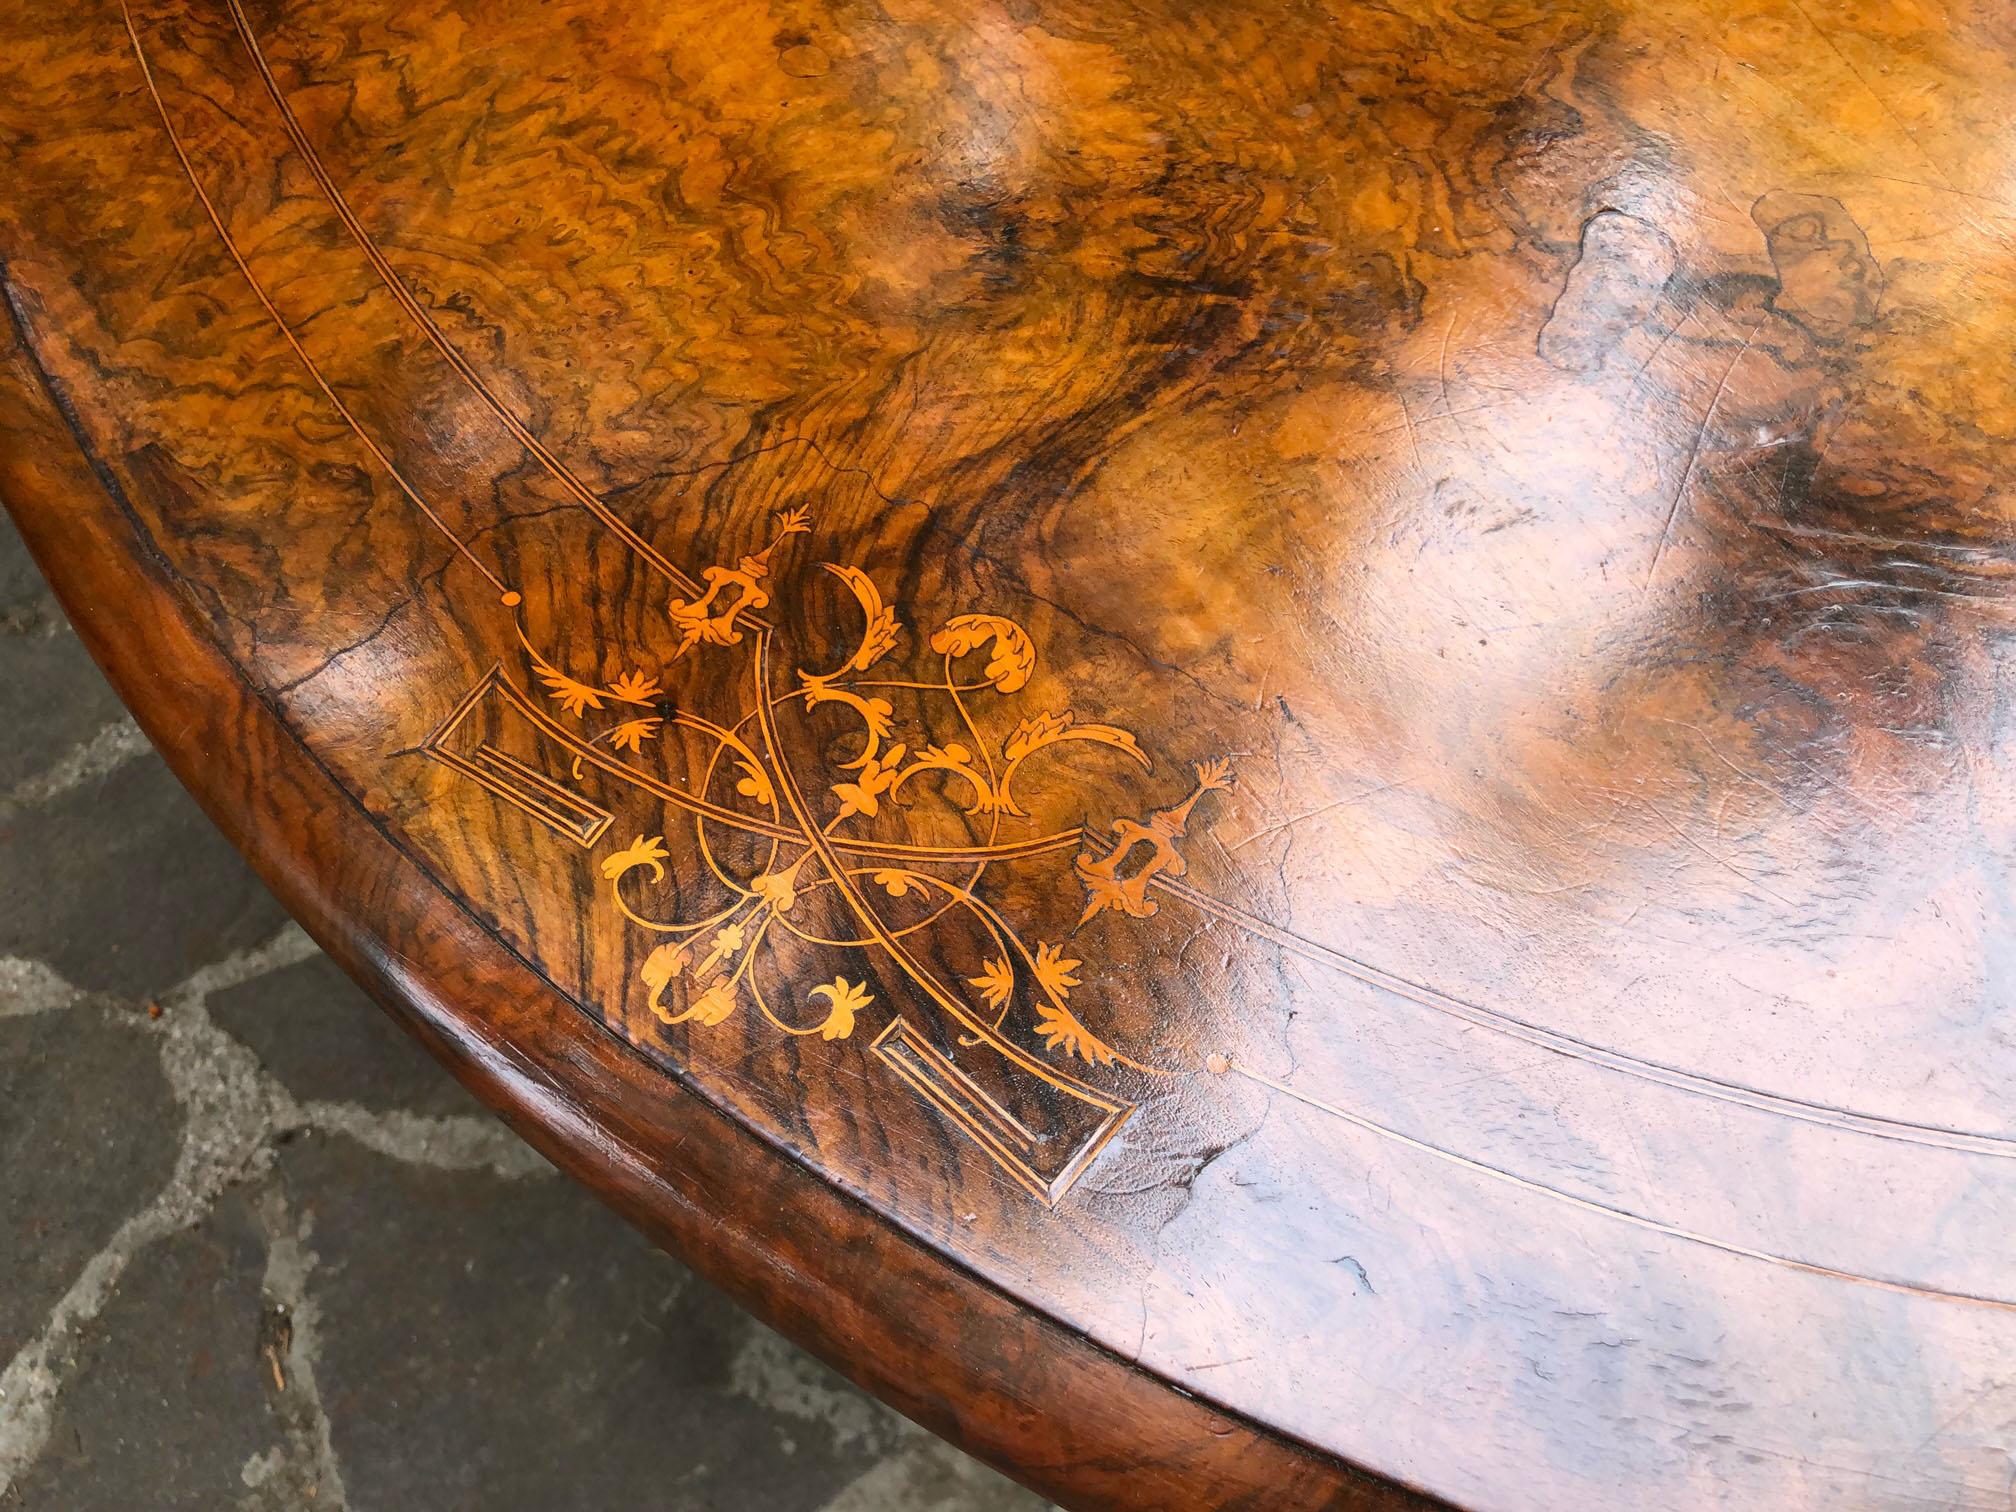 Ovaler Segeltisch aus Nussbaum mit Bruyèrewurzel, um 1900, Original aus der Toskana.
Elegante Platte mit Intarsien, Beine aus Massivholz.
Er stammt aus einem alten Landhaus im Chianti-Gebiet in der Toskana.
Der Lack ist original in Patina, Honig